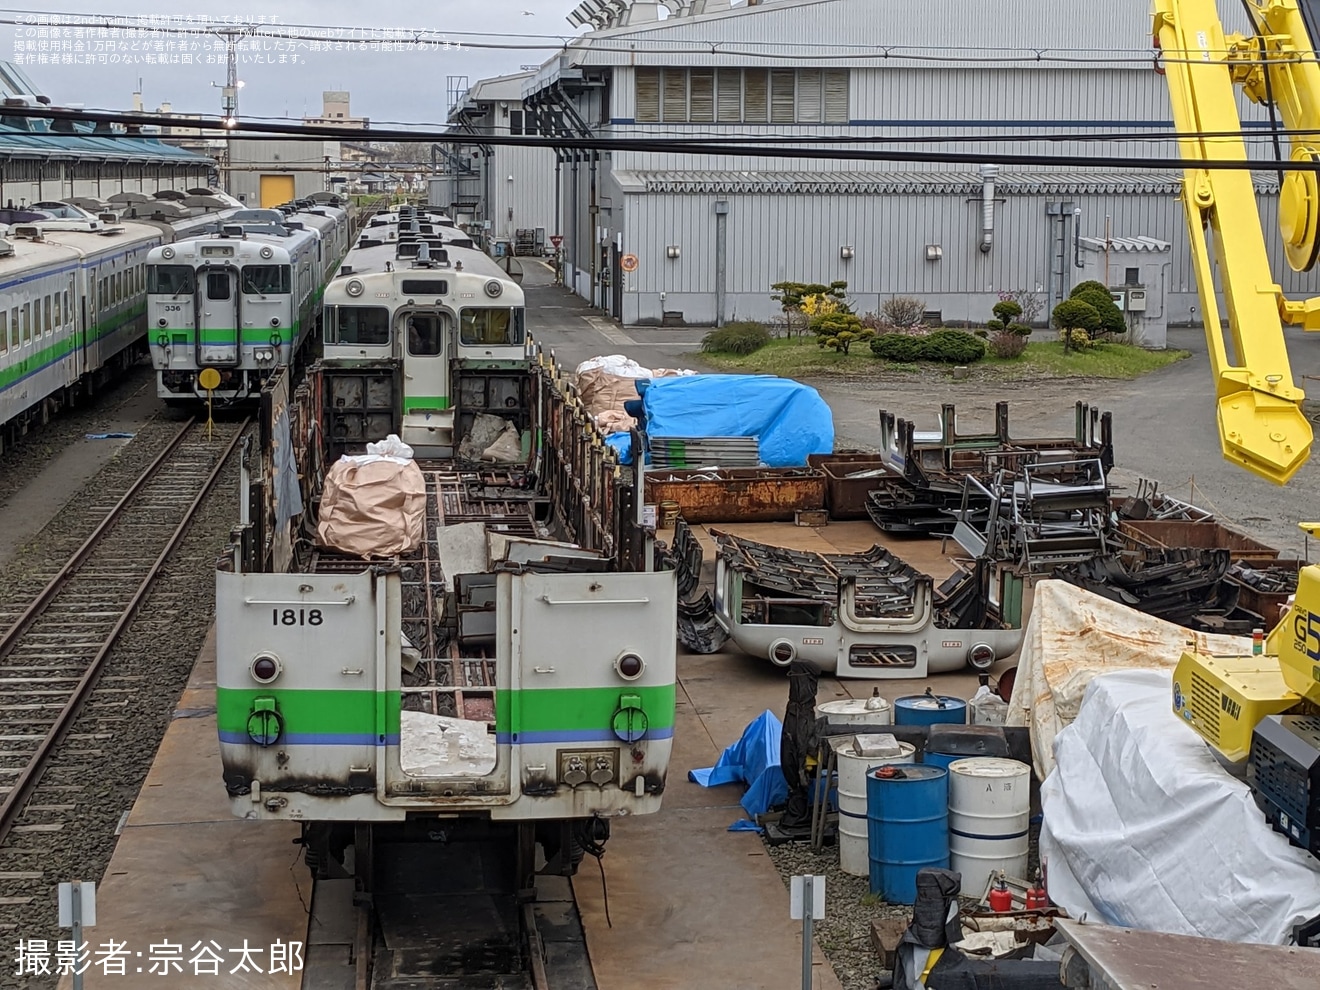 【JR北】キハ40-1818が釧路運輸車両所で解体中の拡大写真